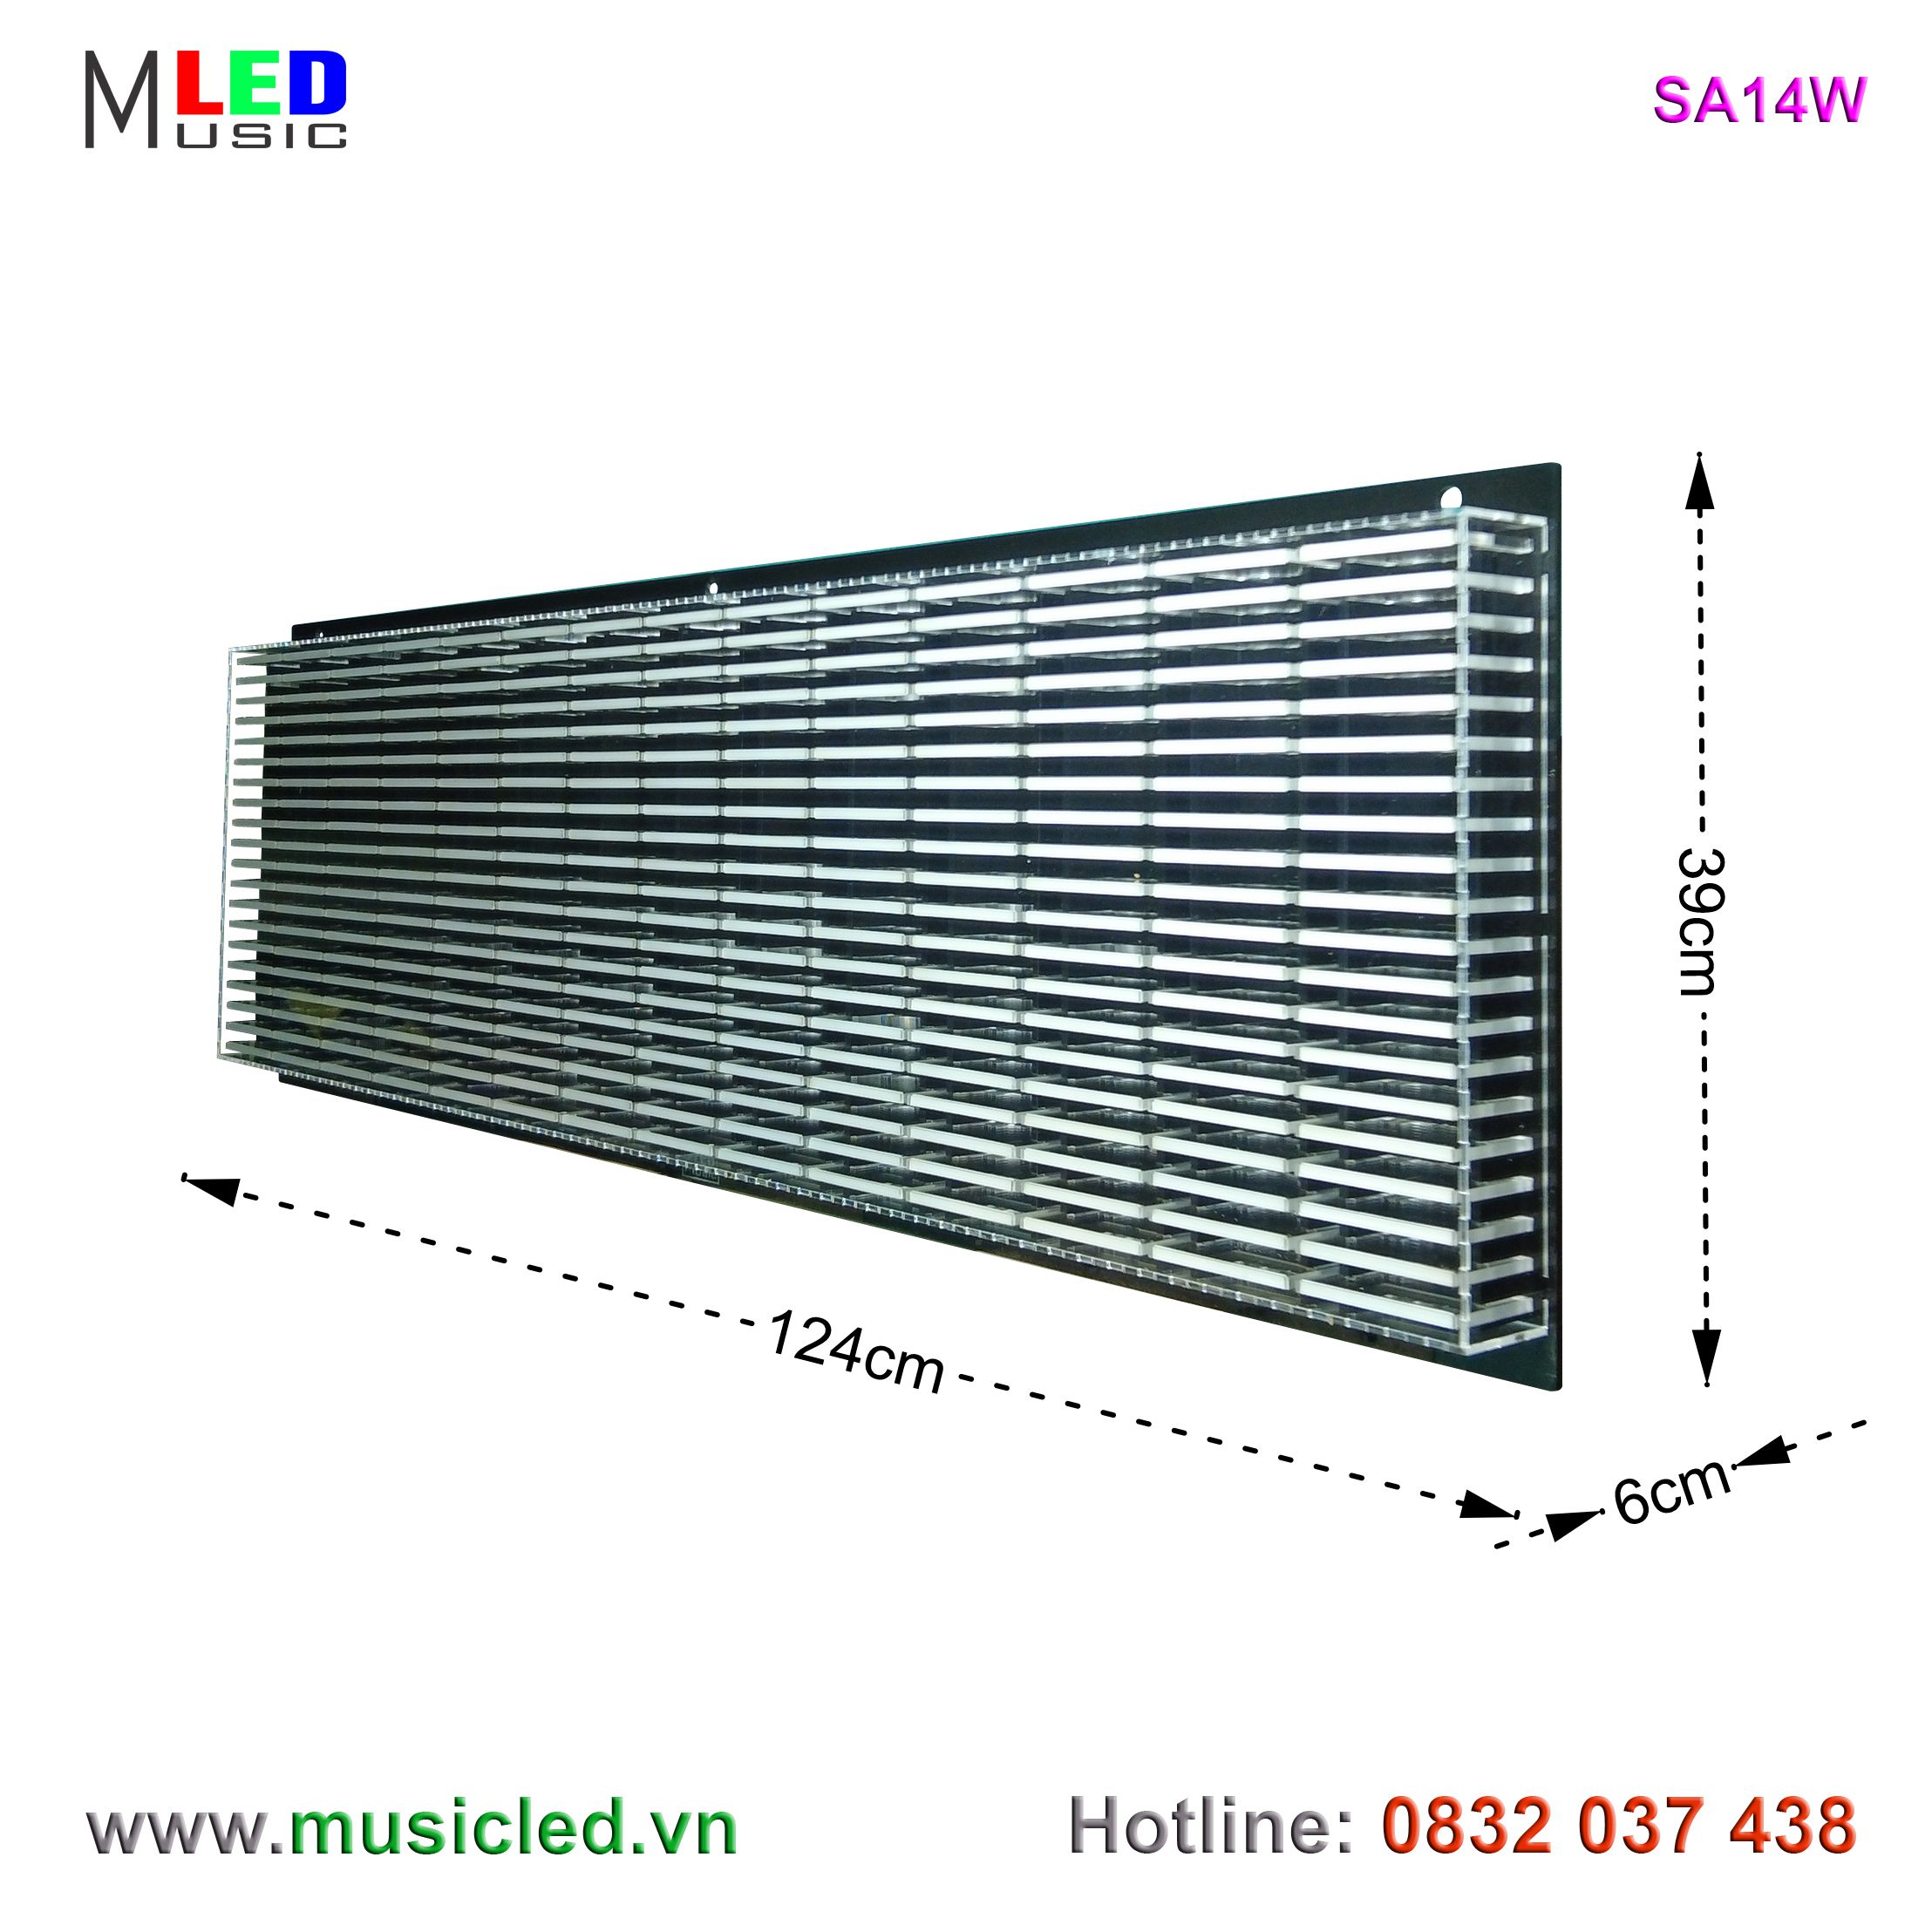 Dàn đèn Music LED nháy theo tần số nhạc 14 cột treo tường (SA14W)